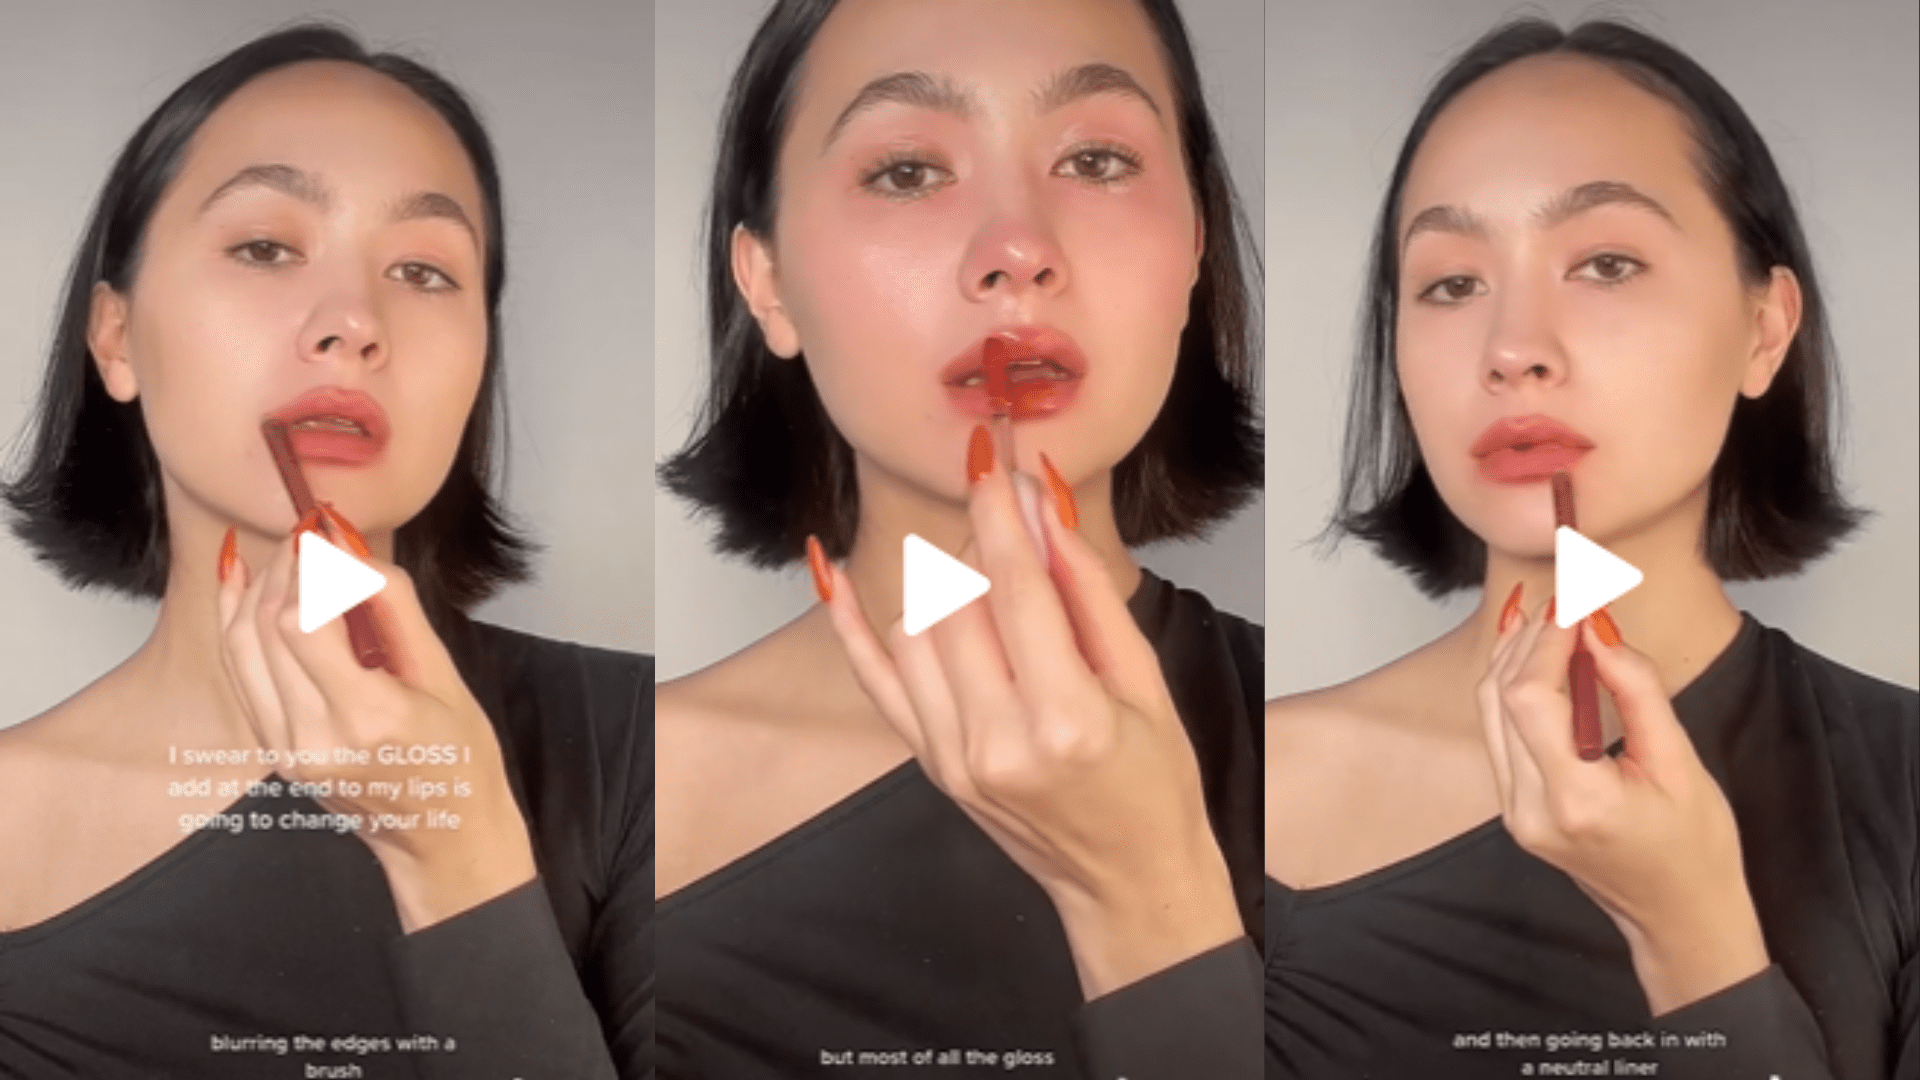 Maquiagem com efeito de “cara de choro” viraliza no TikTok